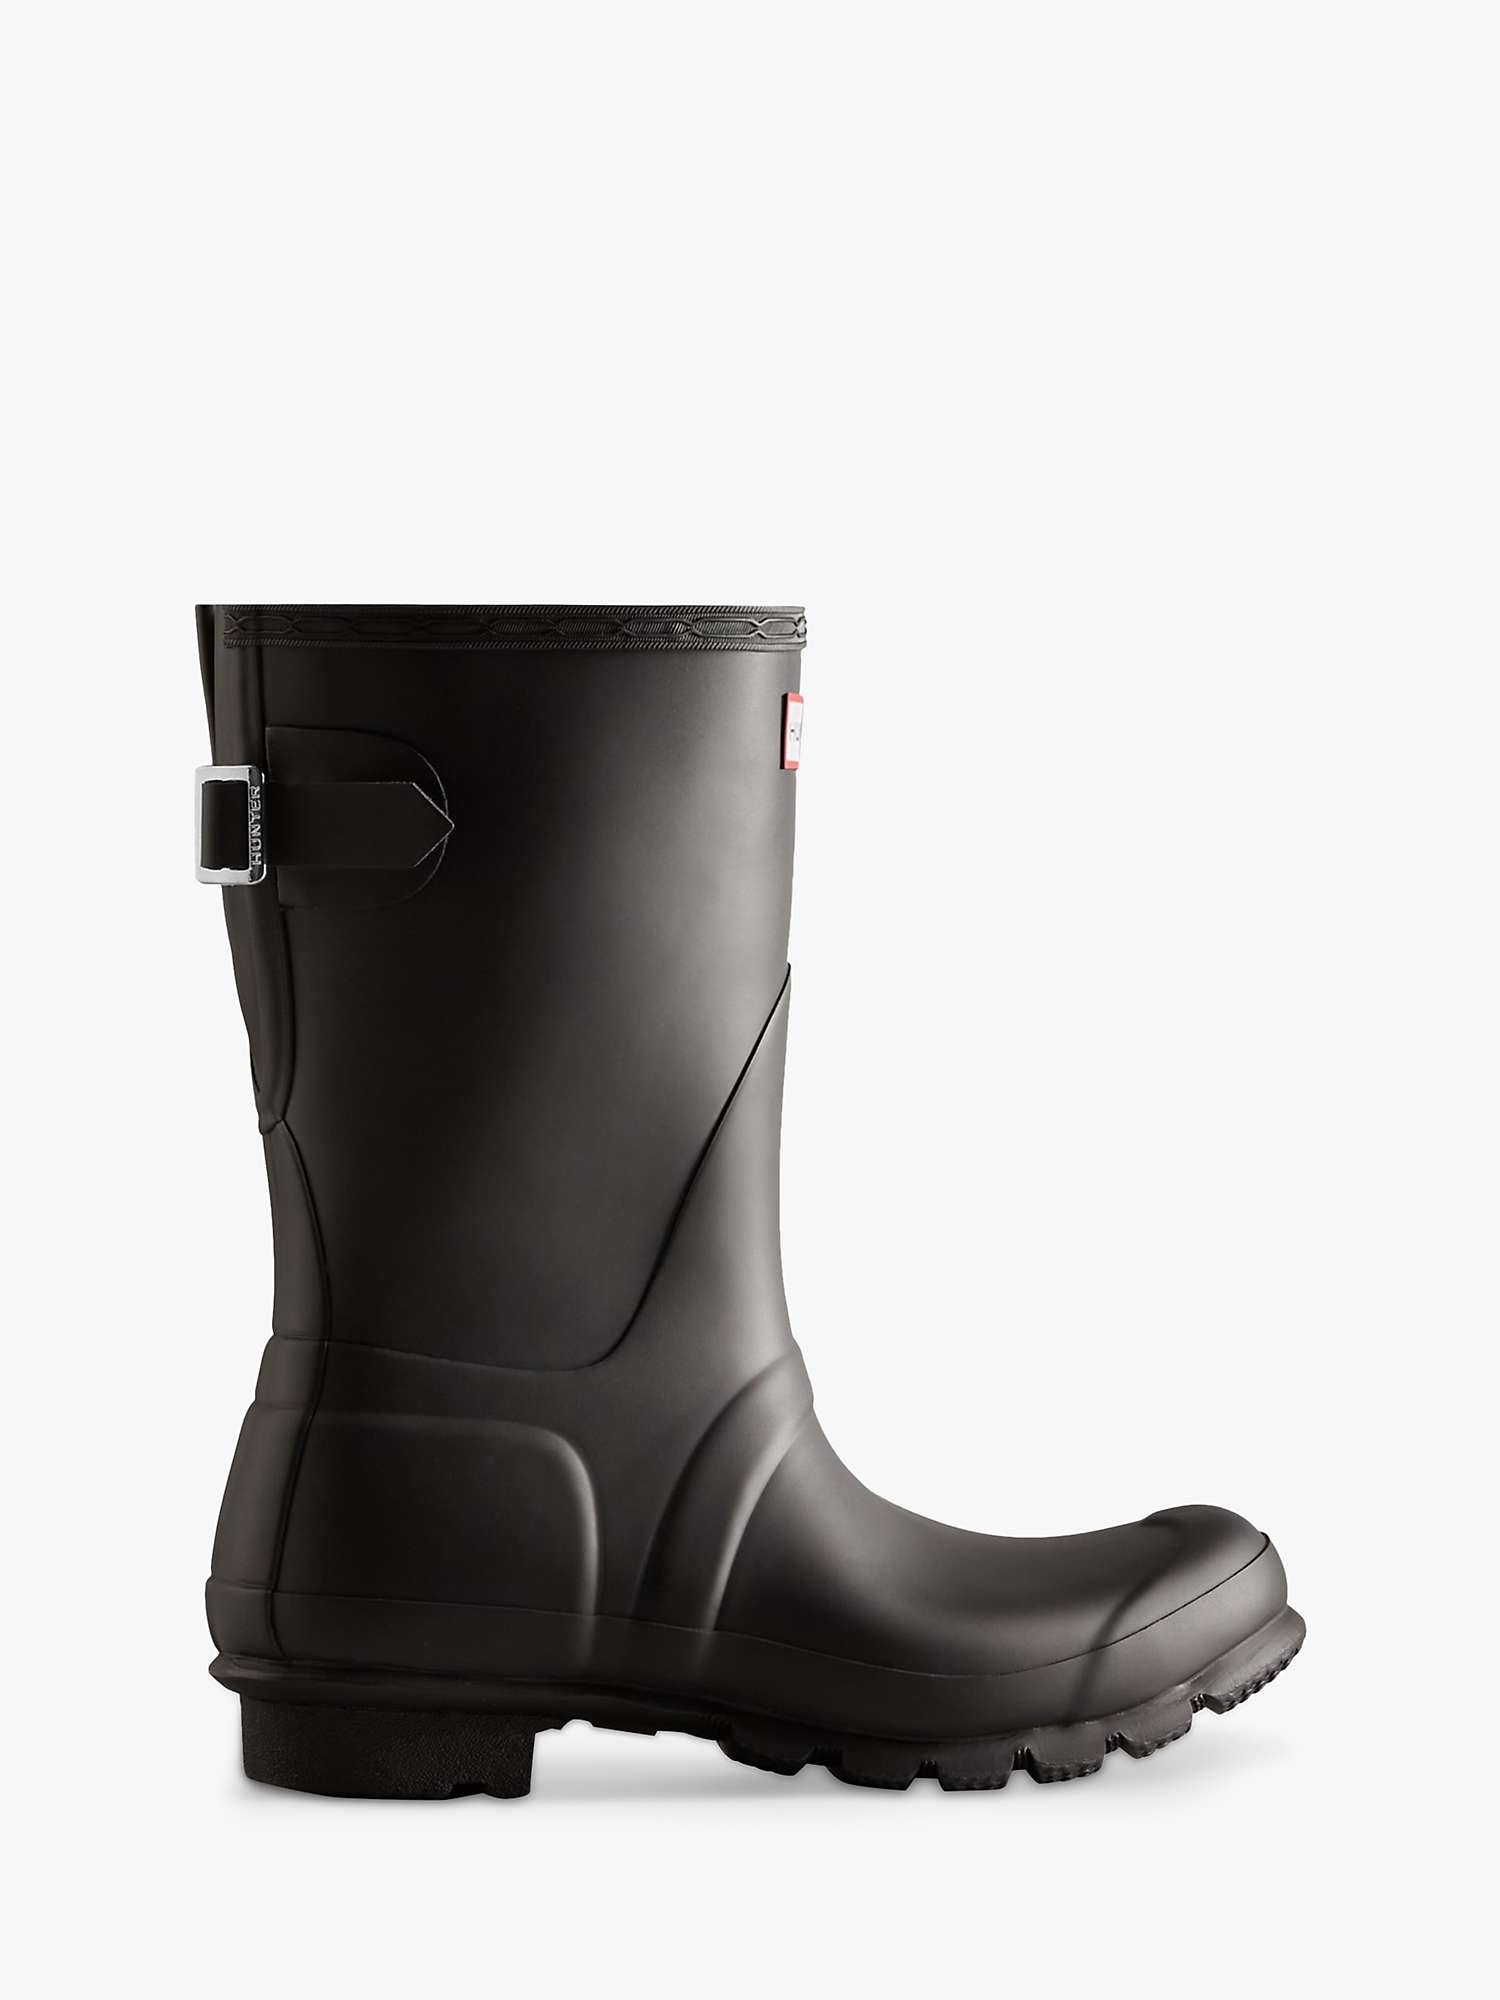 Buy Hunter Short Back Adjustable Wellington Boots Online at johnlewis.com